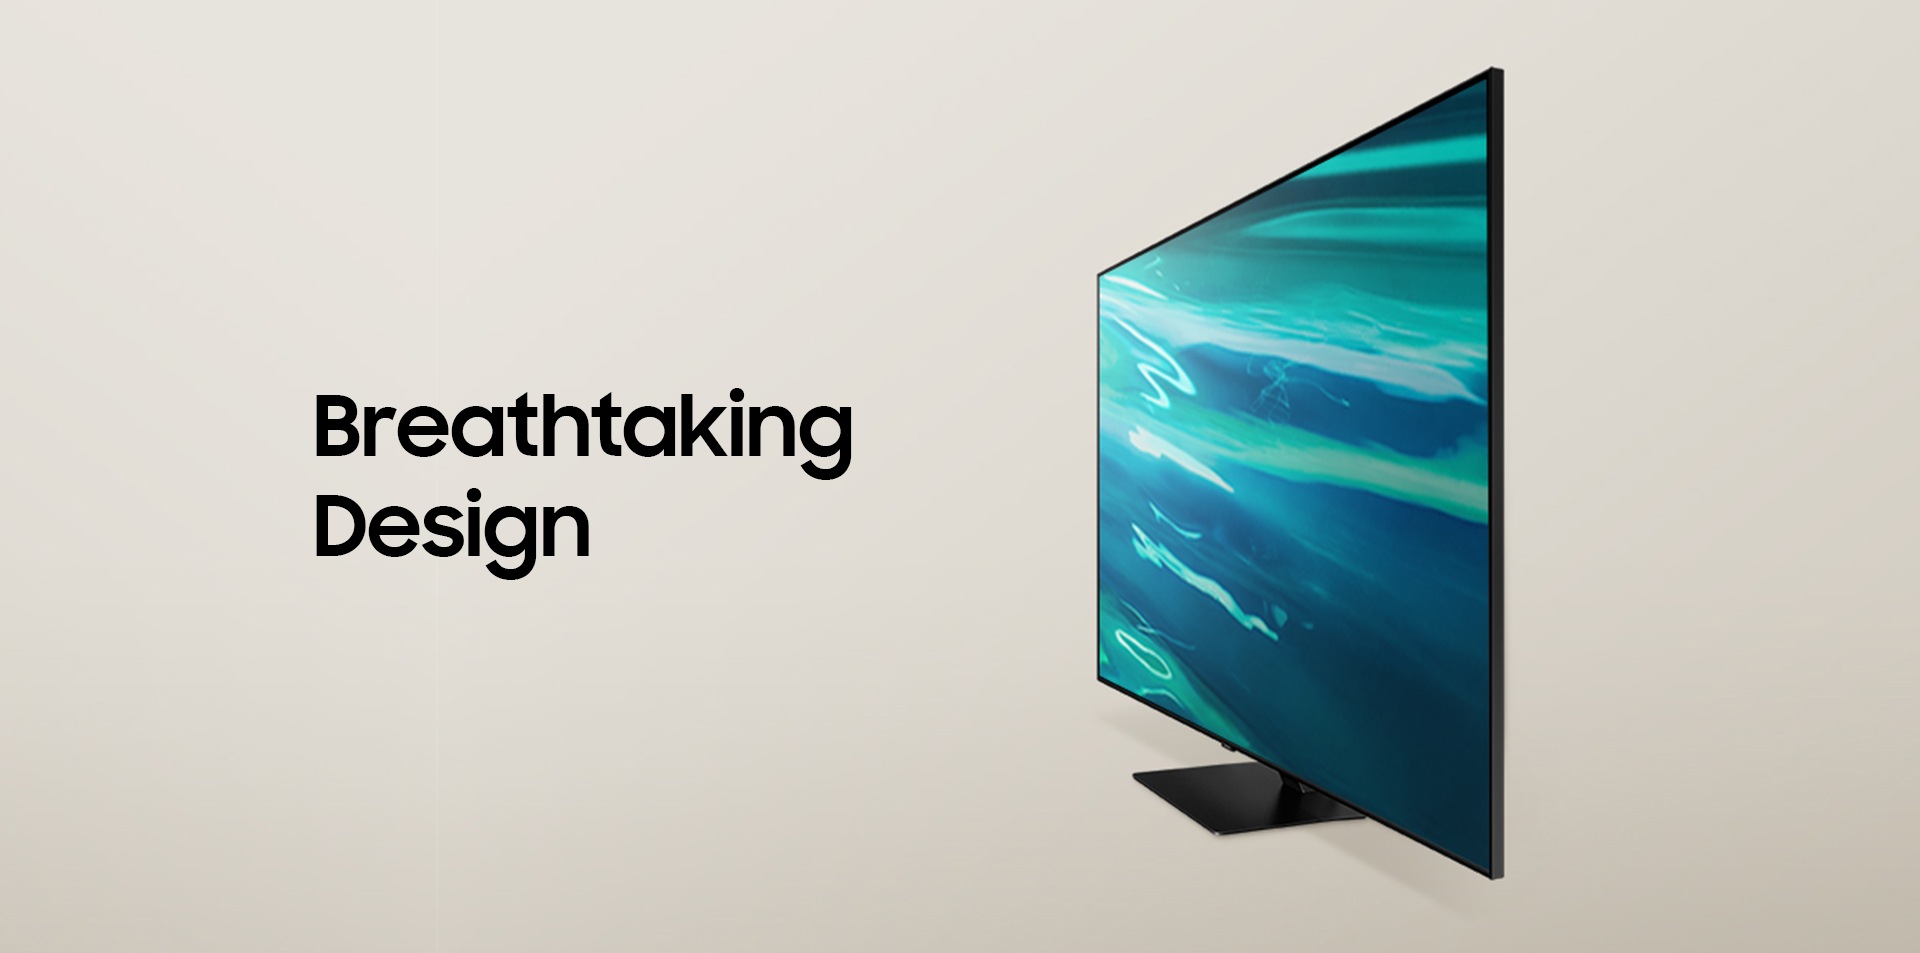 QLED 4K TV - Breathtaking Design